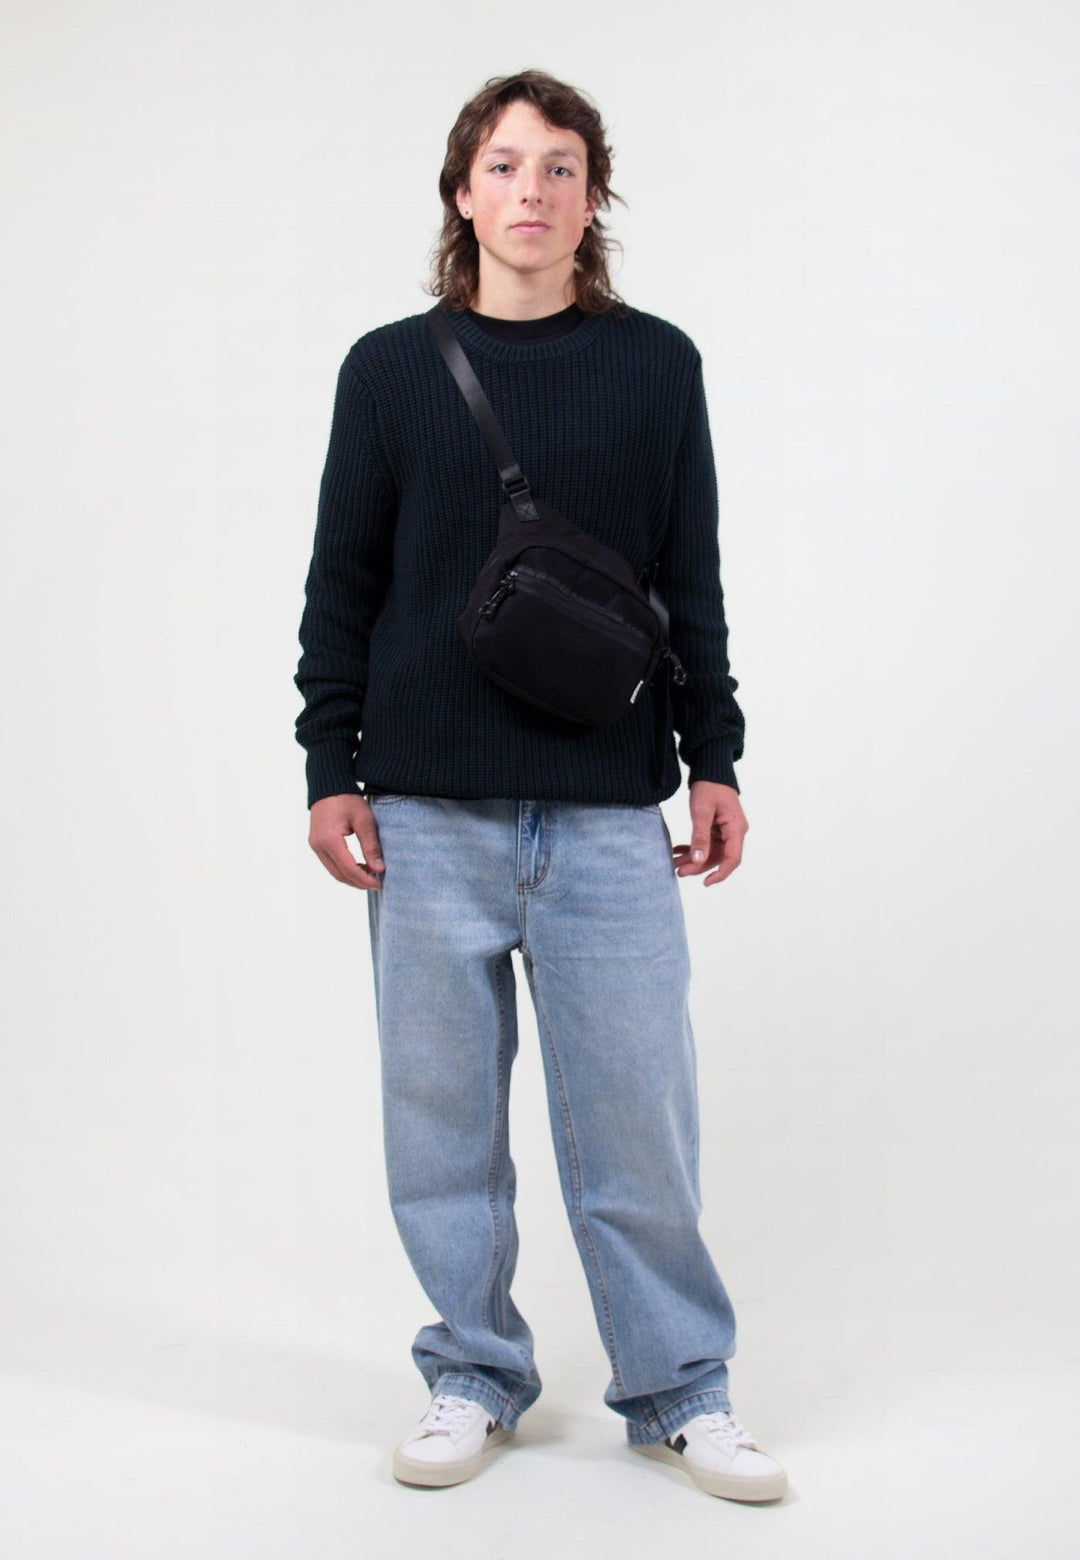 ROLLAS Mens 'Lazy Boy' Loose Fit Crop Jeans - Size 32" - Jean Pool